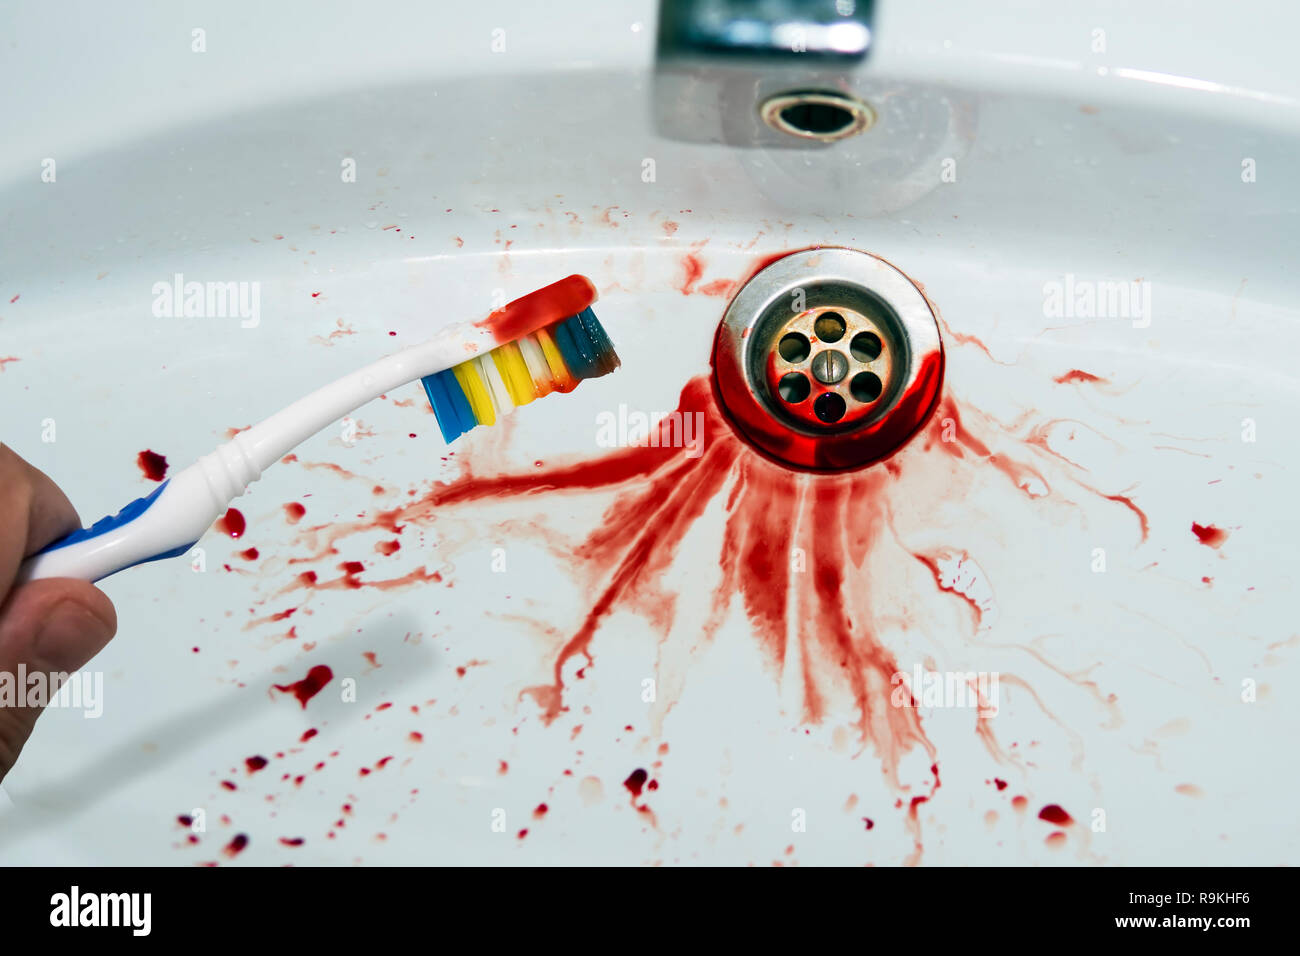 Close up of toothbrush in male main avec des traces de sang sur un fond de puits spitted. Brosse à dents sanglantes près de la vasque. Purge g Banque D'Images